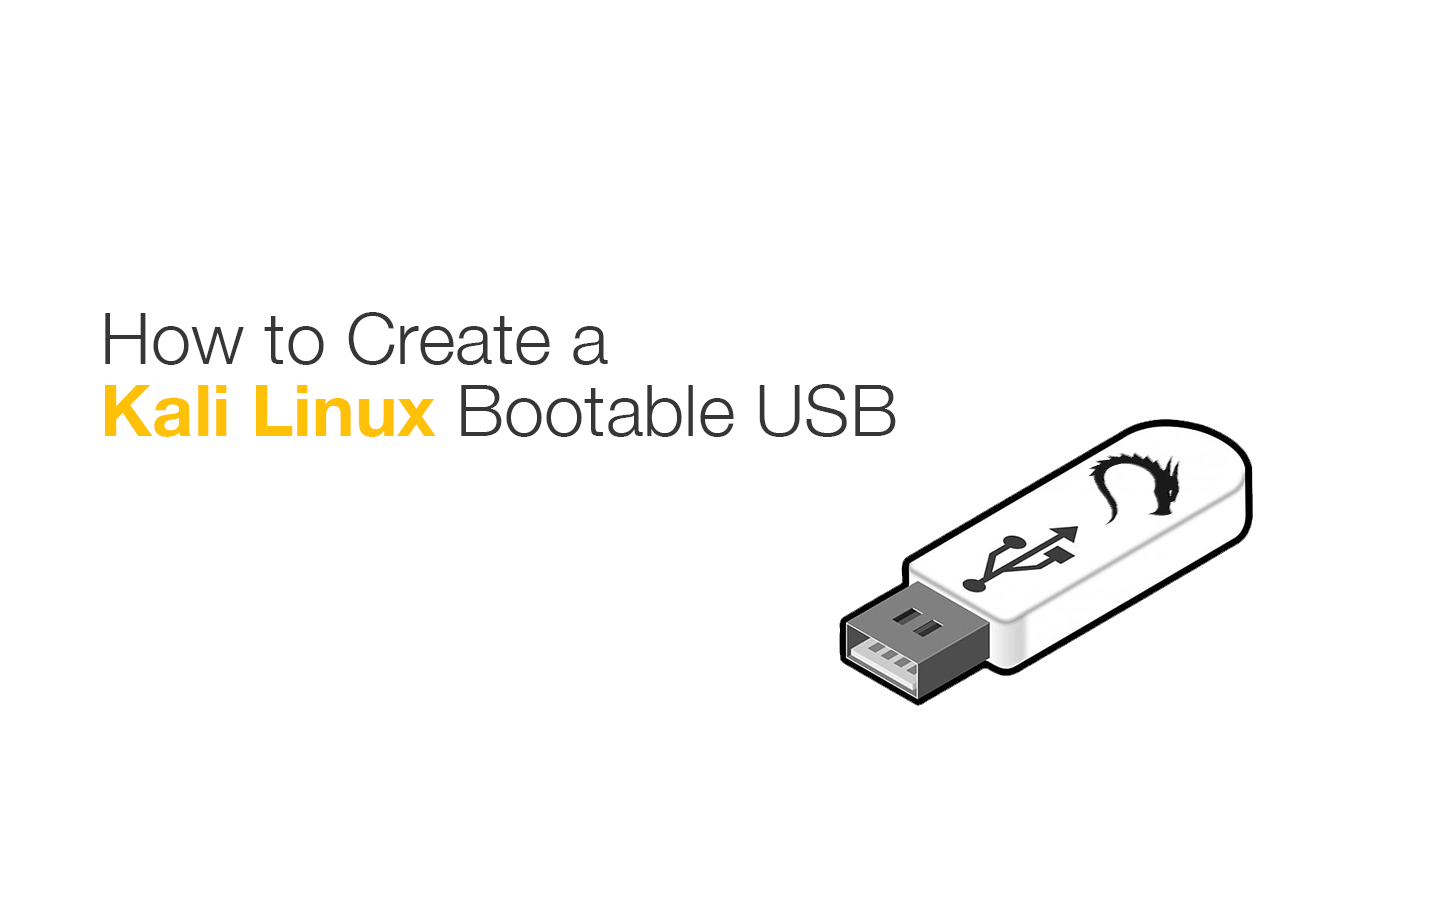 globaal geluid snorkel How to Create a Kali Linux Bootable Usb - Securing Ninja